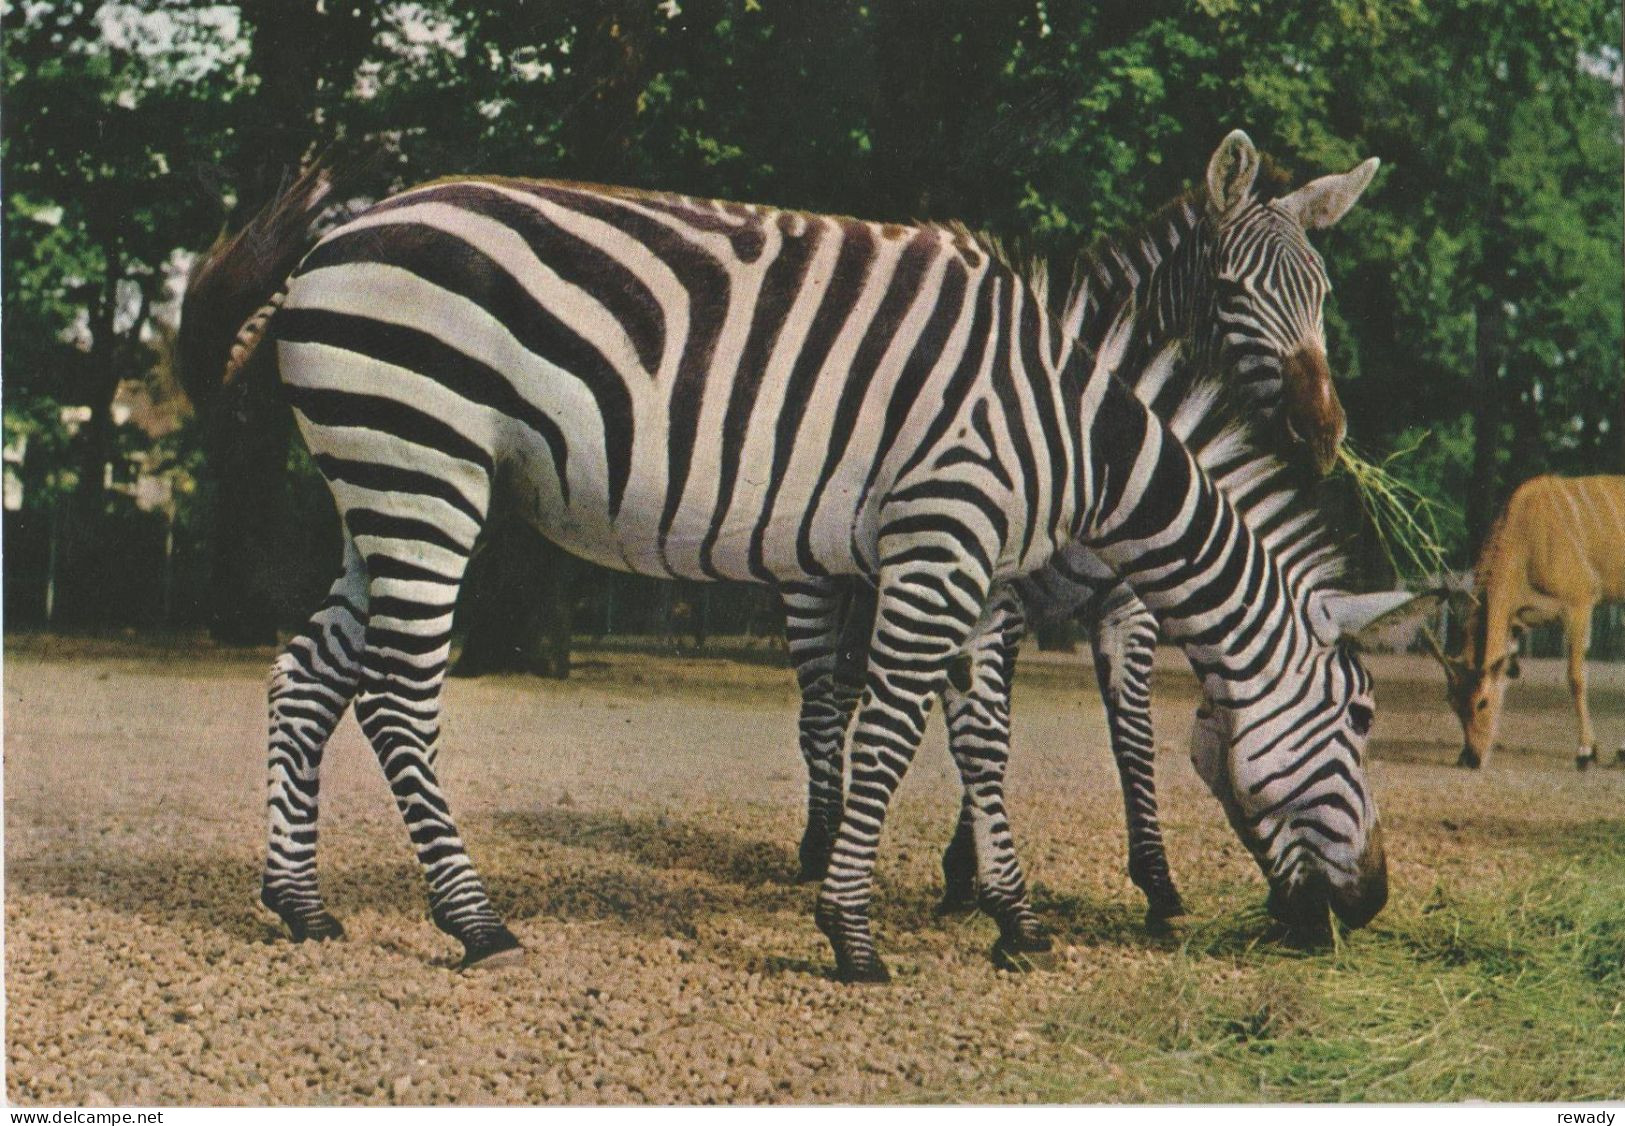 Zebra - Zebres - Zebras - Grants Zebra - Eunus Guagga Granti - Zebras